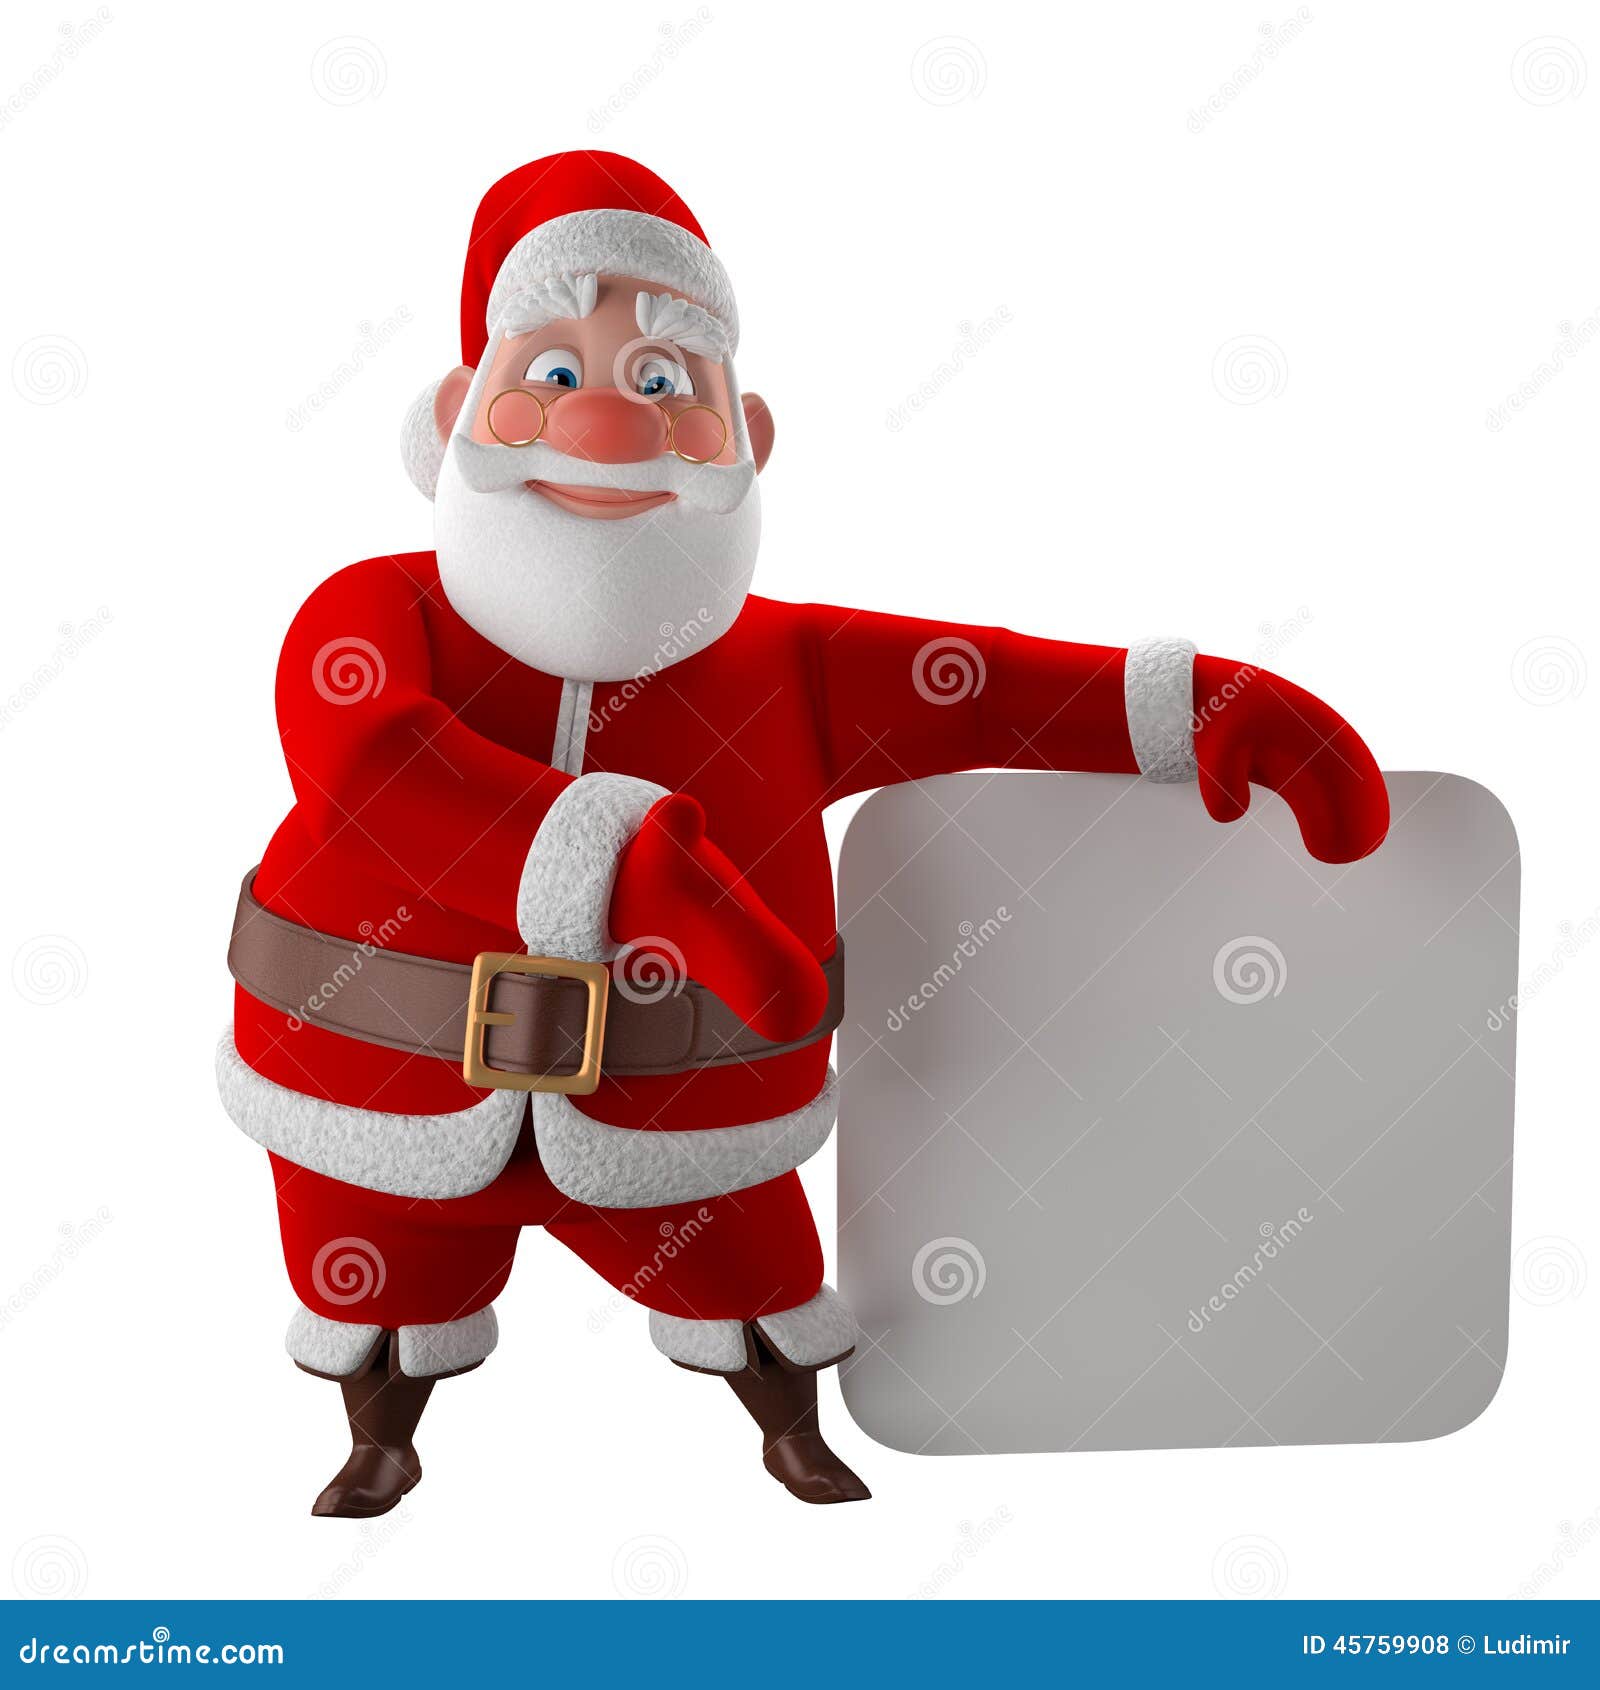 Babbo Natale 3d.Modello Allegro 3d Del Babbo Natale Icona Di Natale Felice Illustrazione Di Stock Illustrazione Di Uomo Fumetto 45759908